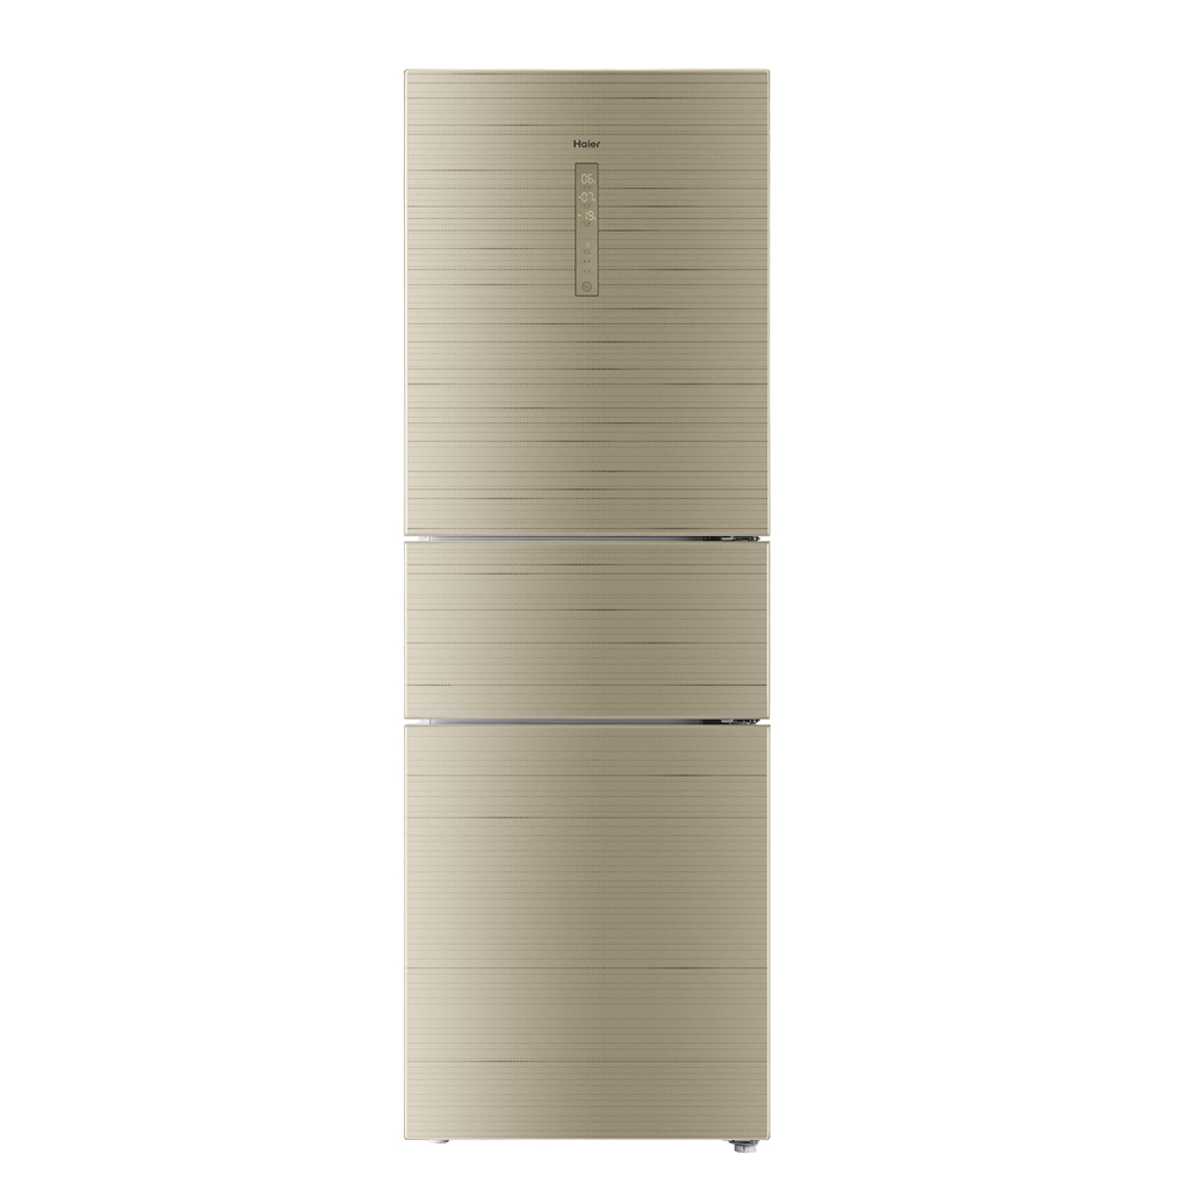 海尔Haier冰箱 BCD-316WDCN 说明书